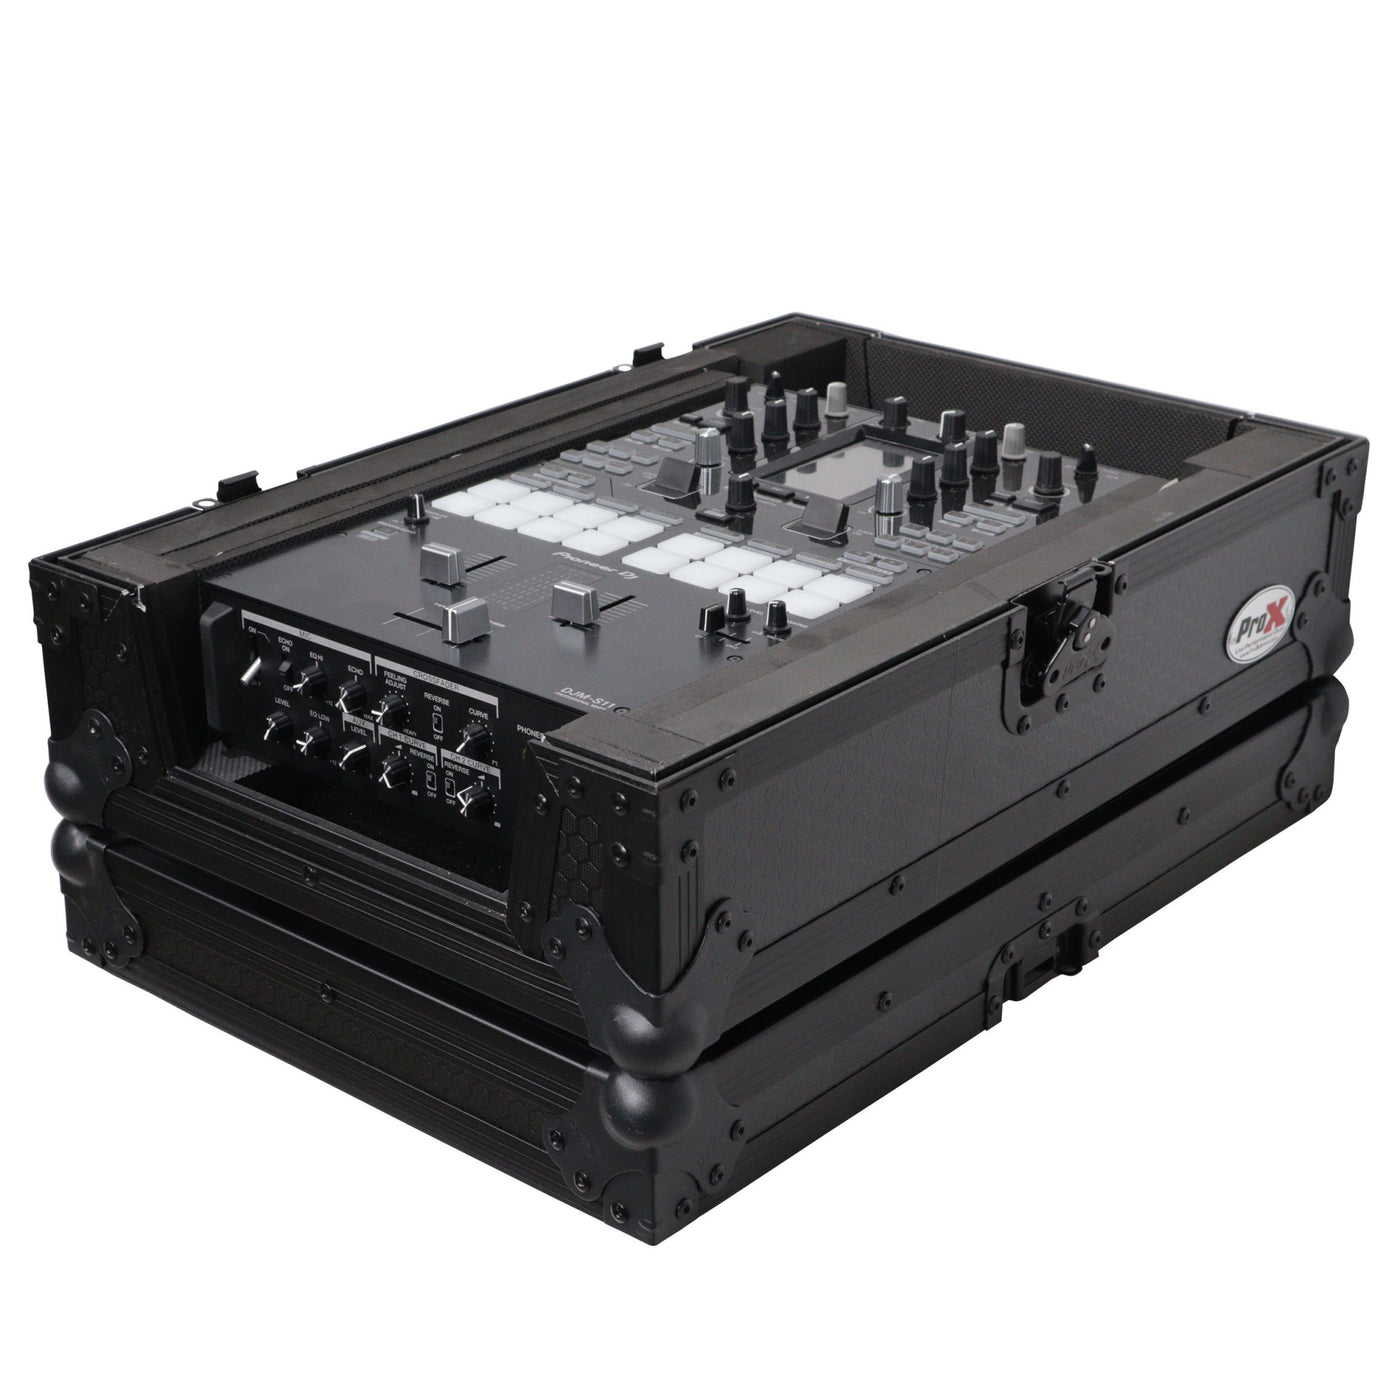 ProX XS-M11BL Universal Flight Case For DJ Mixers, Fits Pioneer DJM S11 / Rane 70 / 72 MK2, Pro Audio Equipment Storage